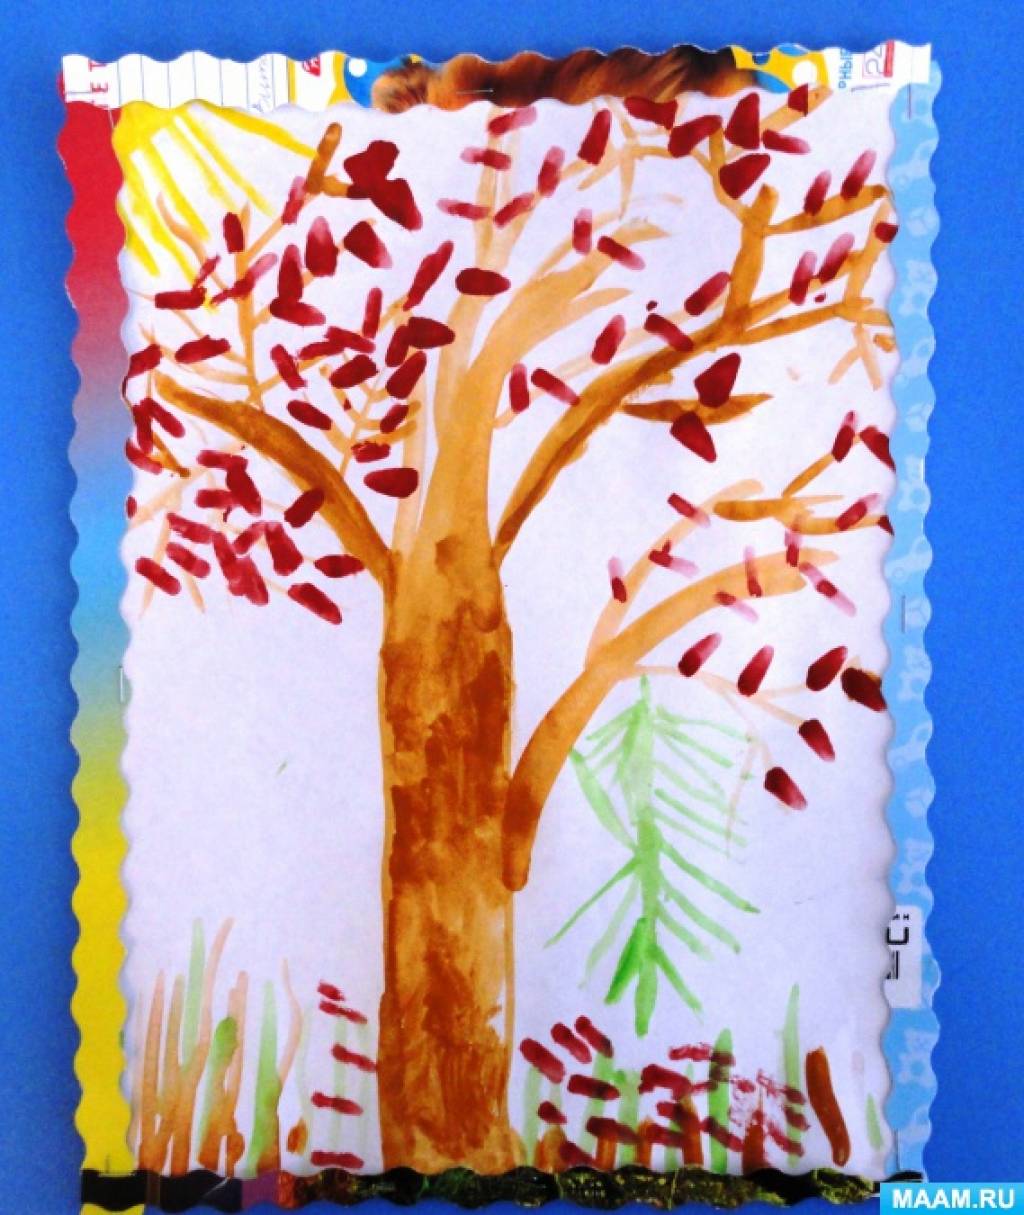 Творческий проект "Осеннее дерево" | Образовательная социальная сеть